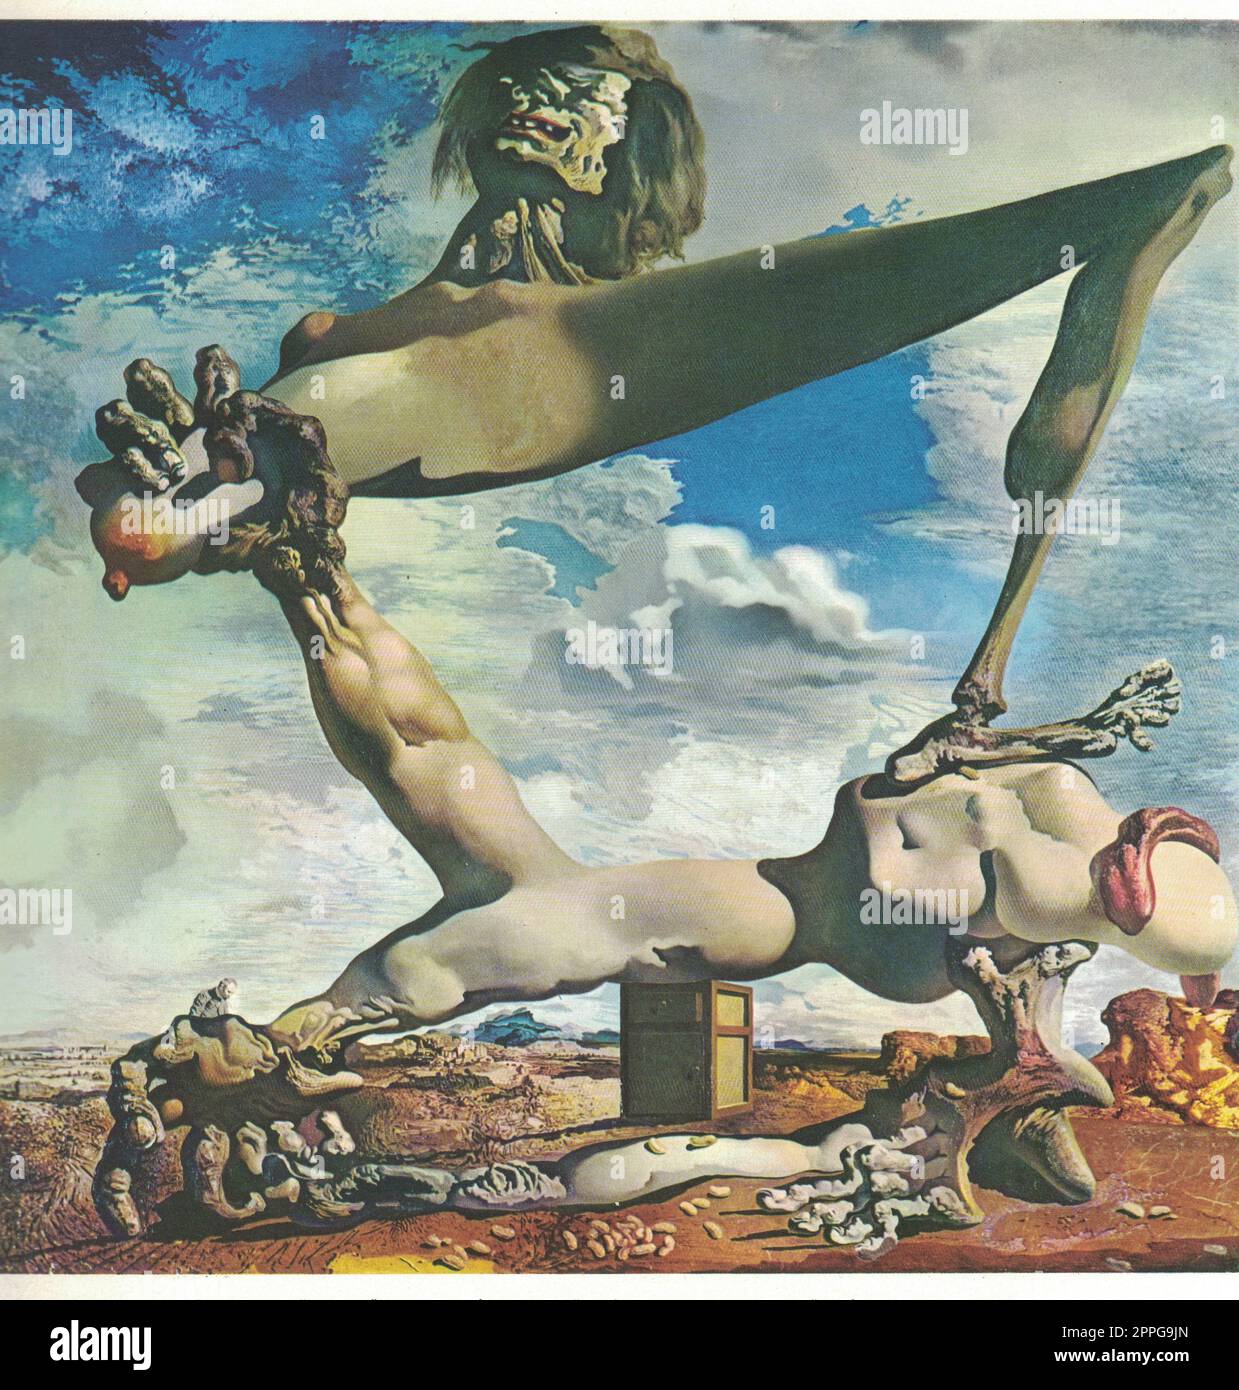 Premonition of Civil War (costruzione morbida con fagioli bolliti),1936, olio su tela. Dipinto di Salvador Dalí. Foto Stock